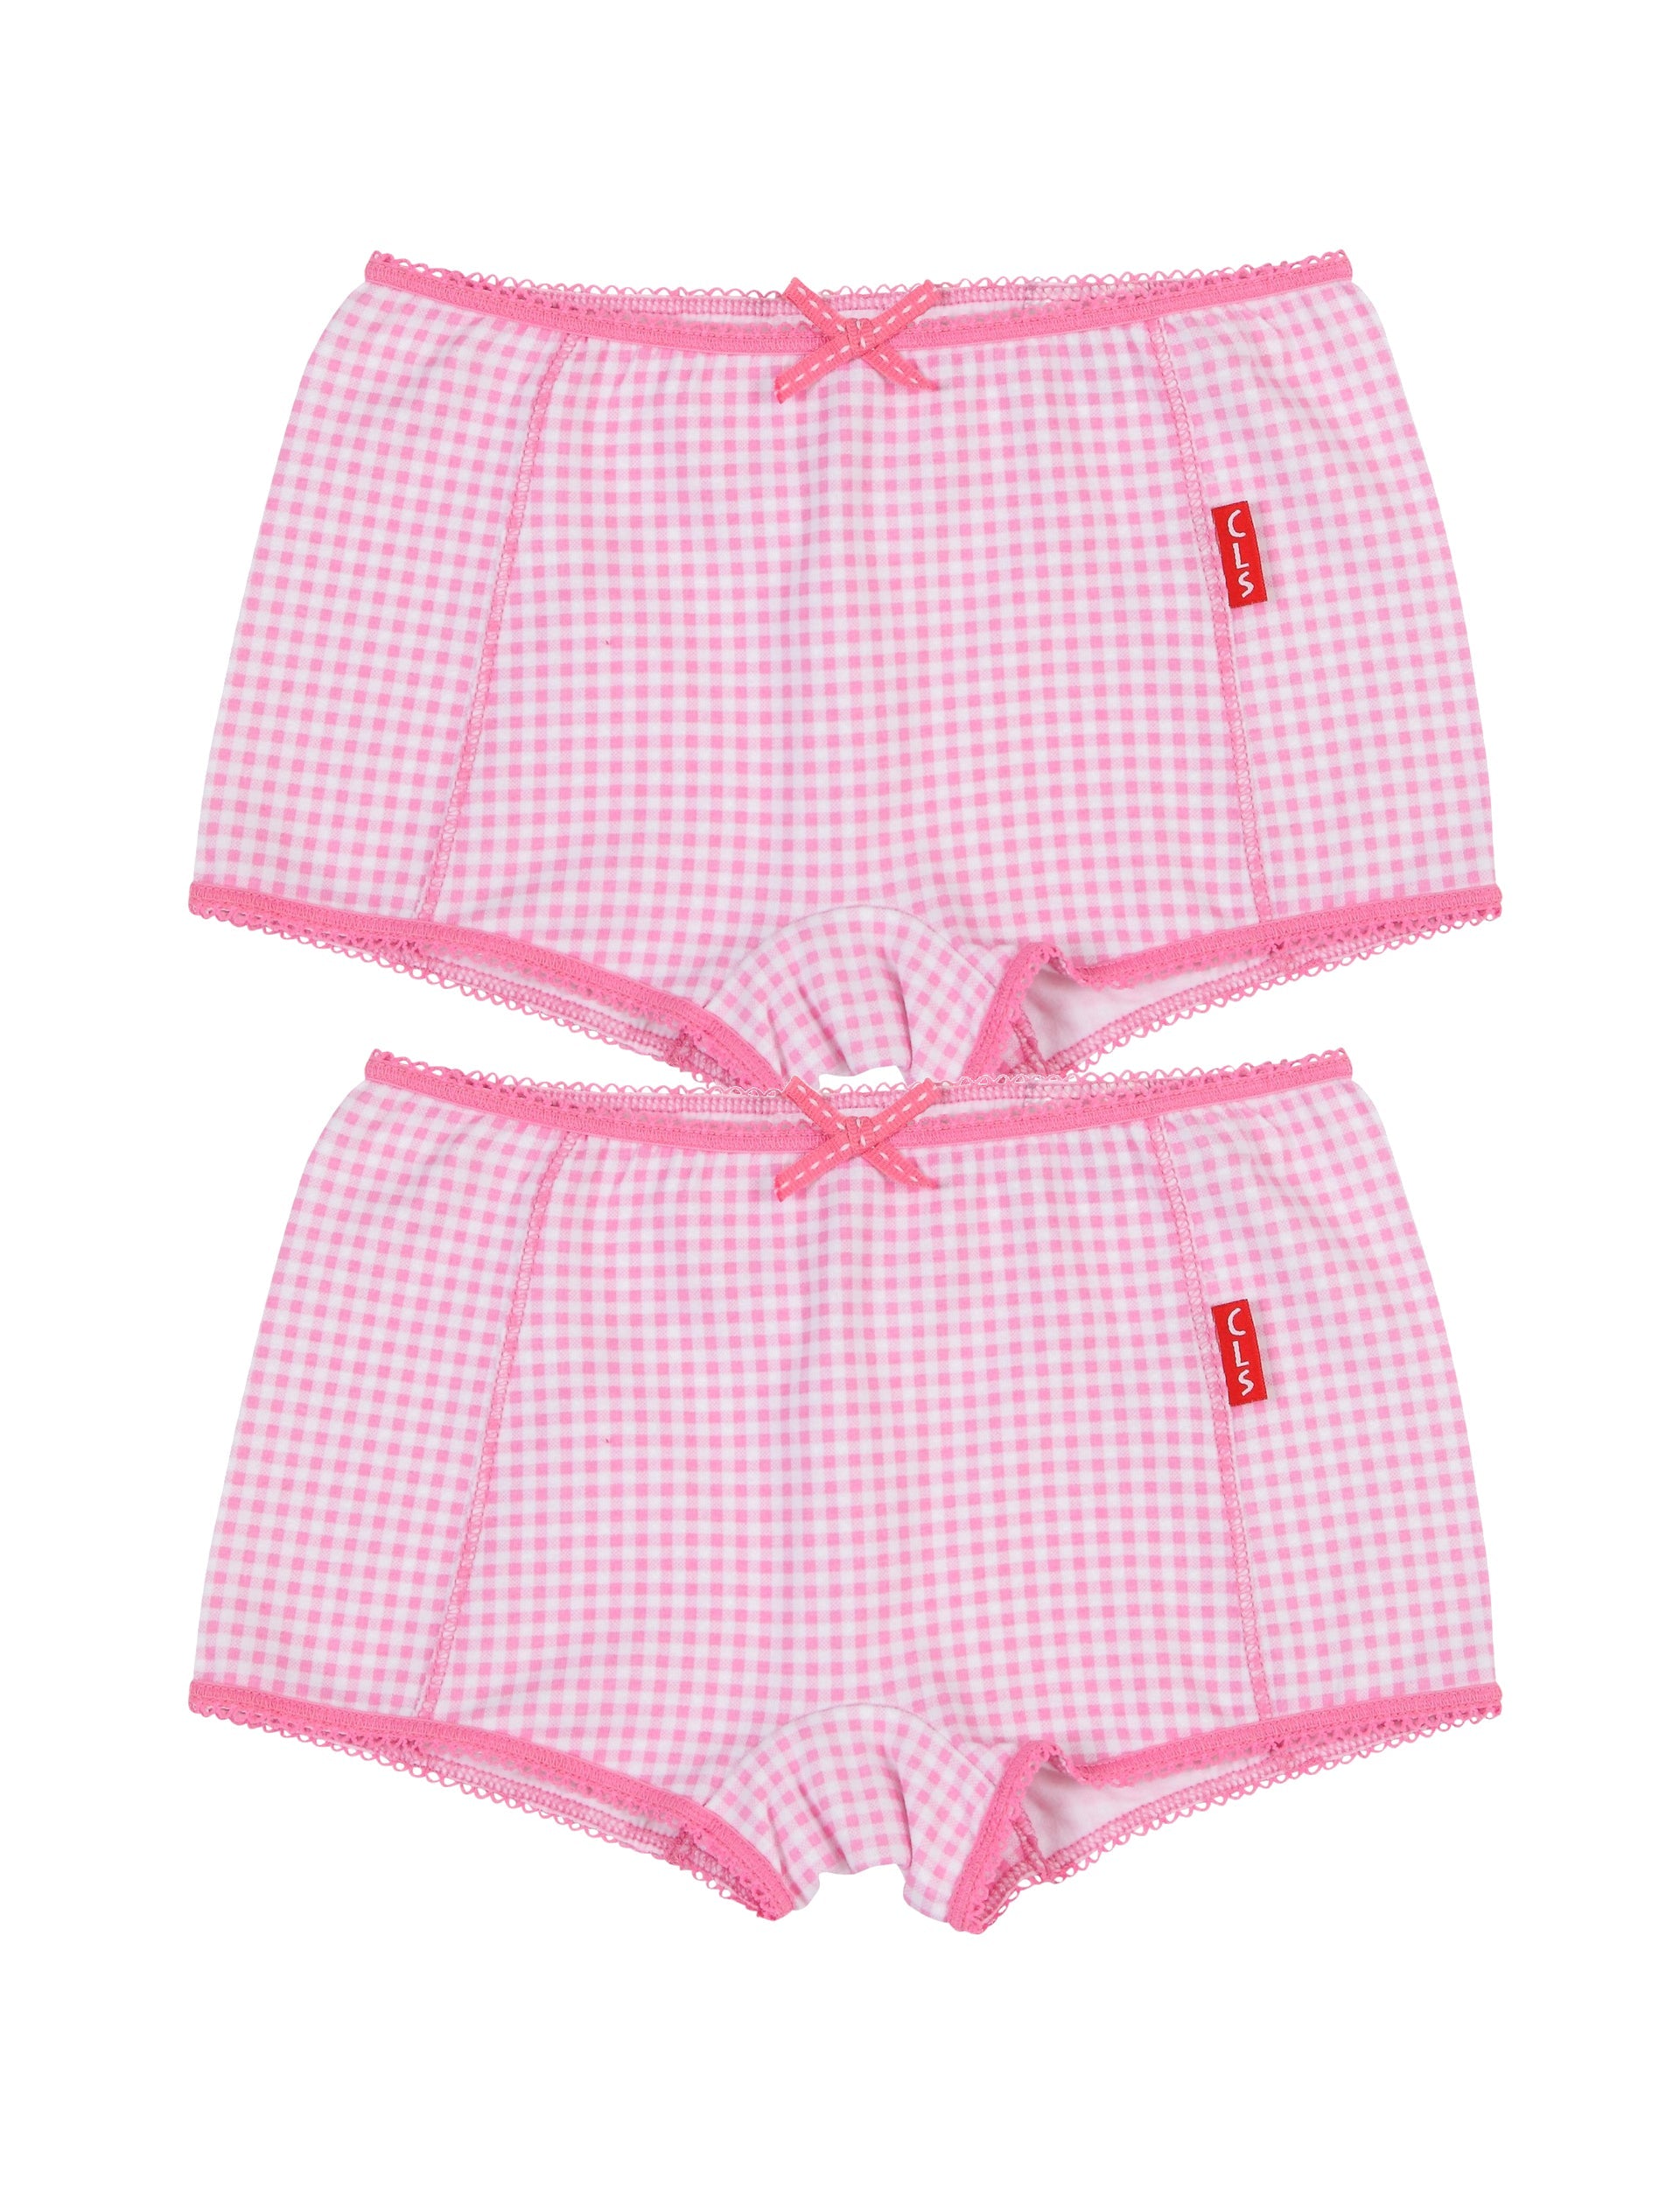 Meisjes Girls 2-Pack Boxer van Claesen's in de kleur Small Pink Checks in maat 152.